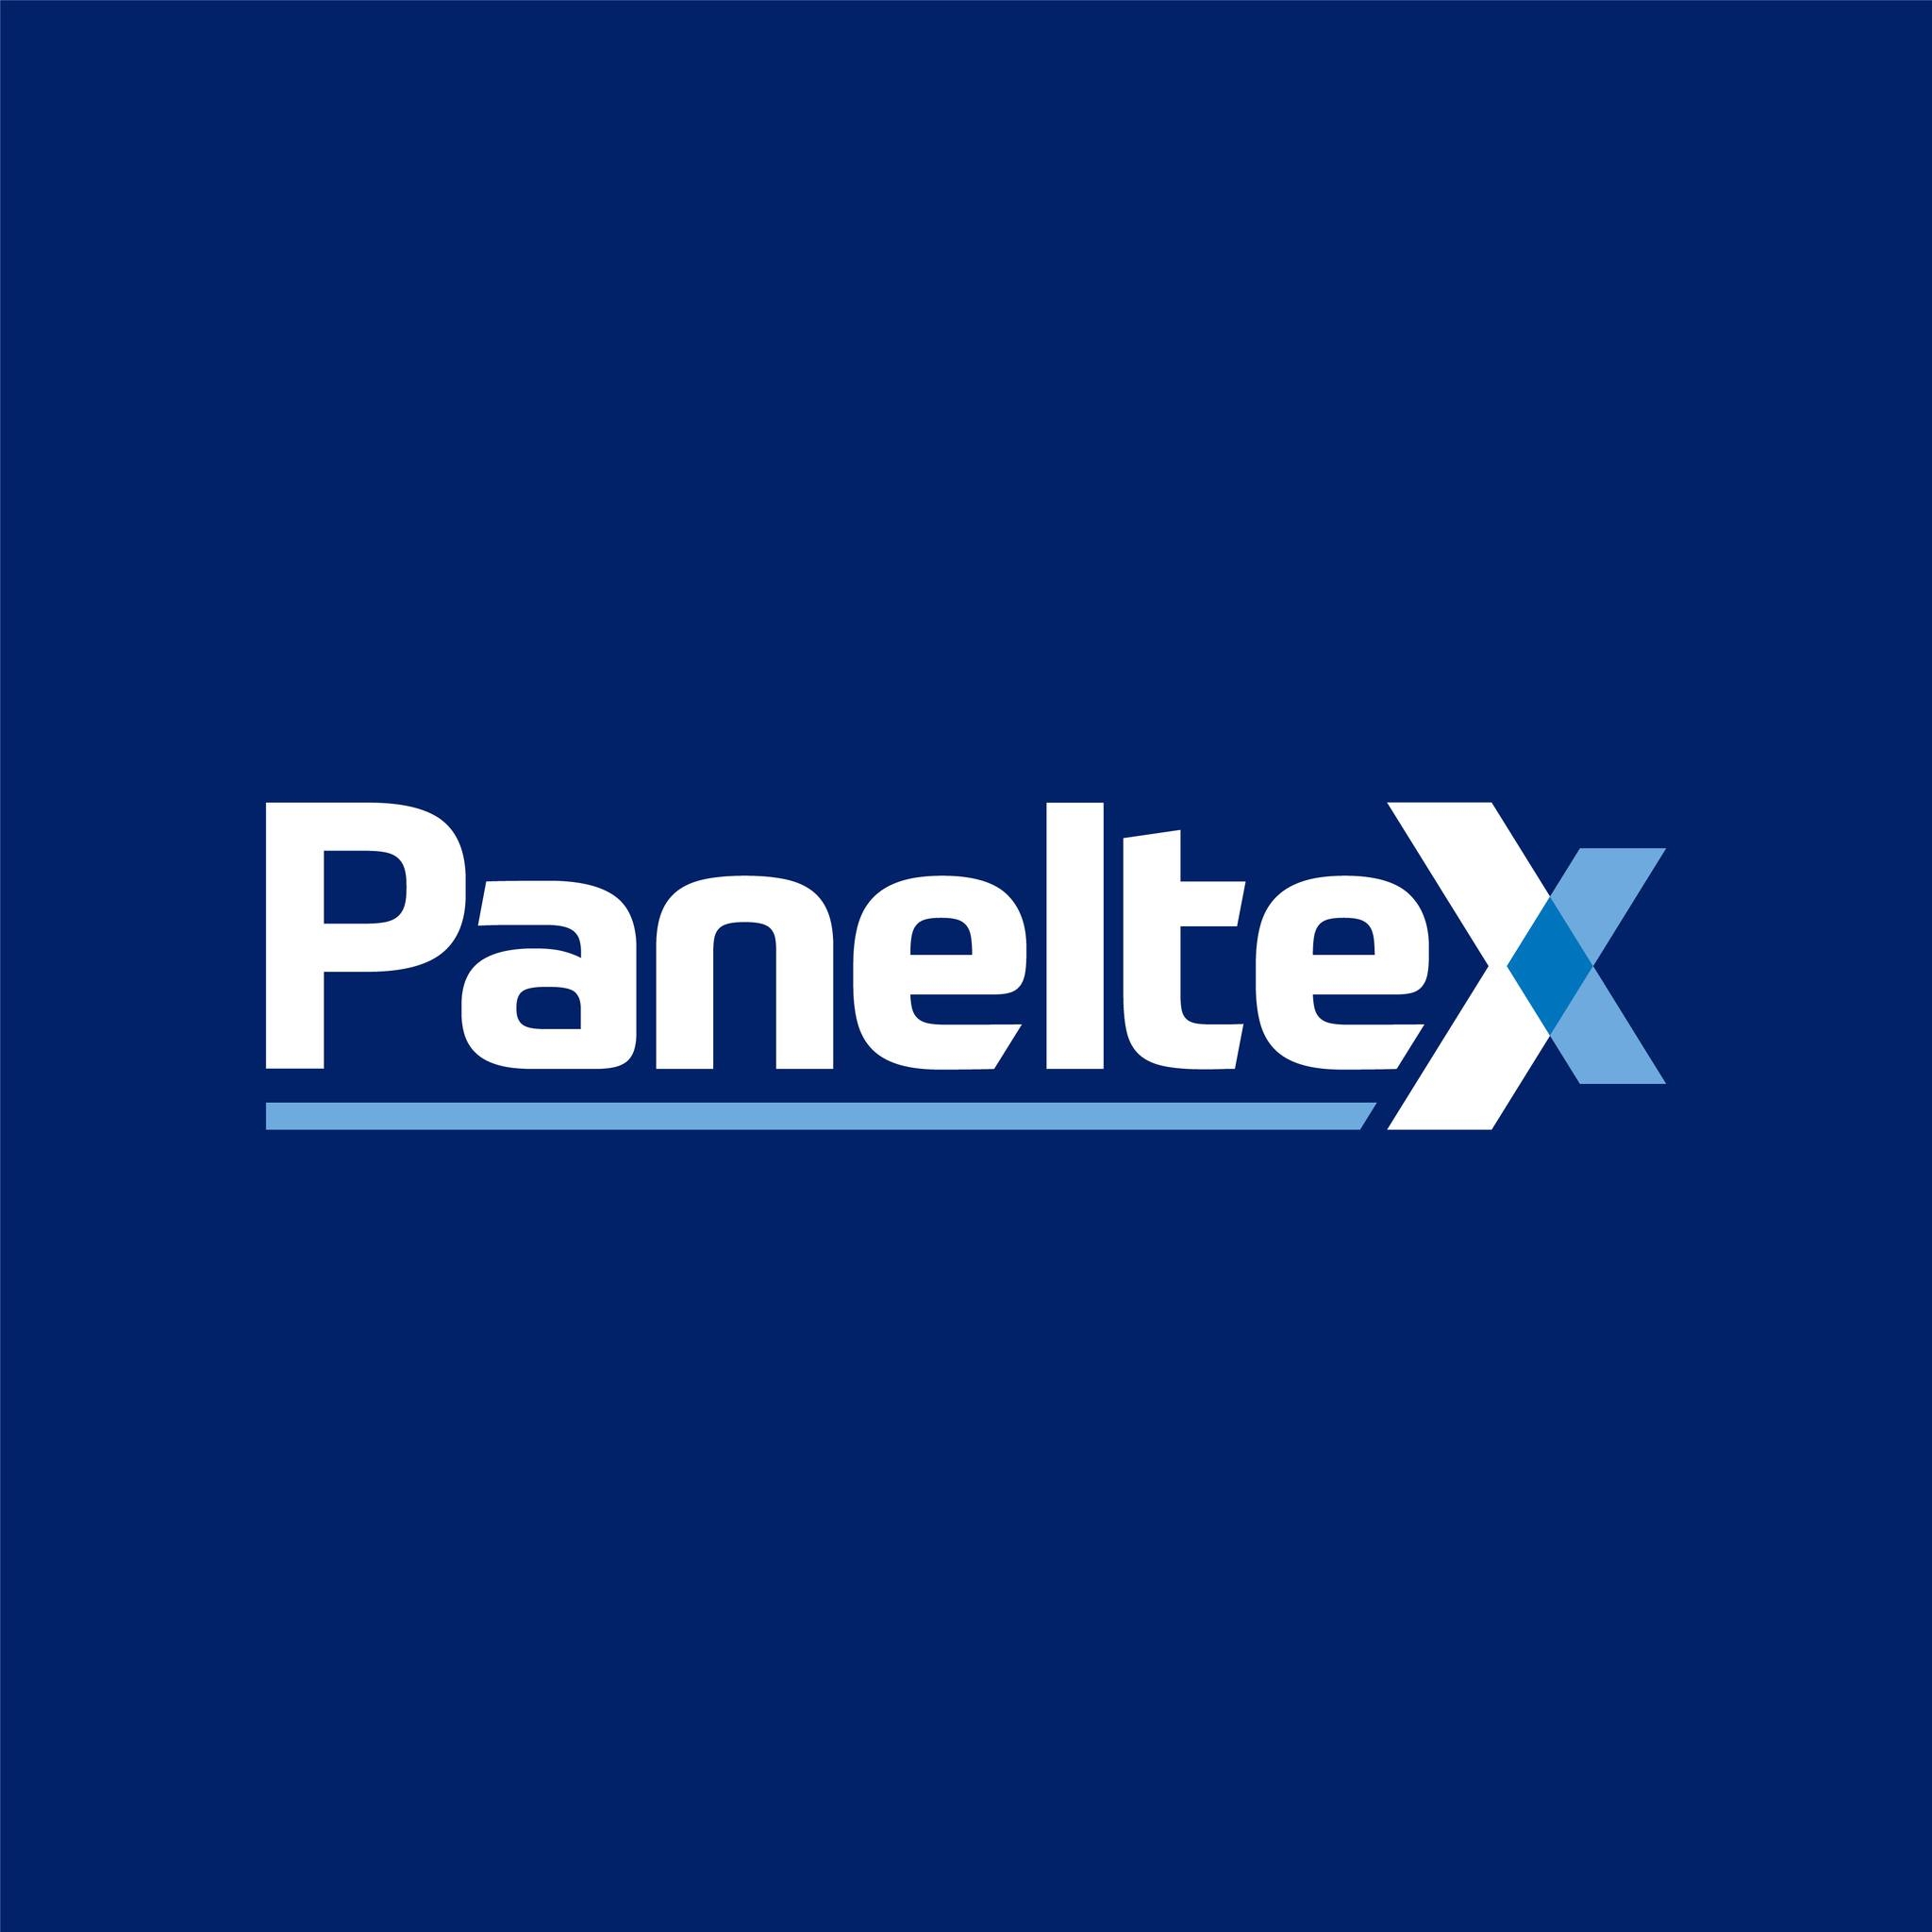 Paneltex